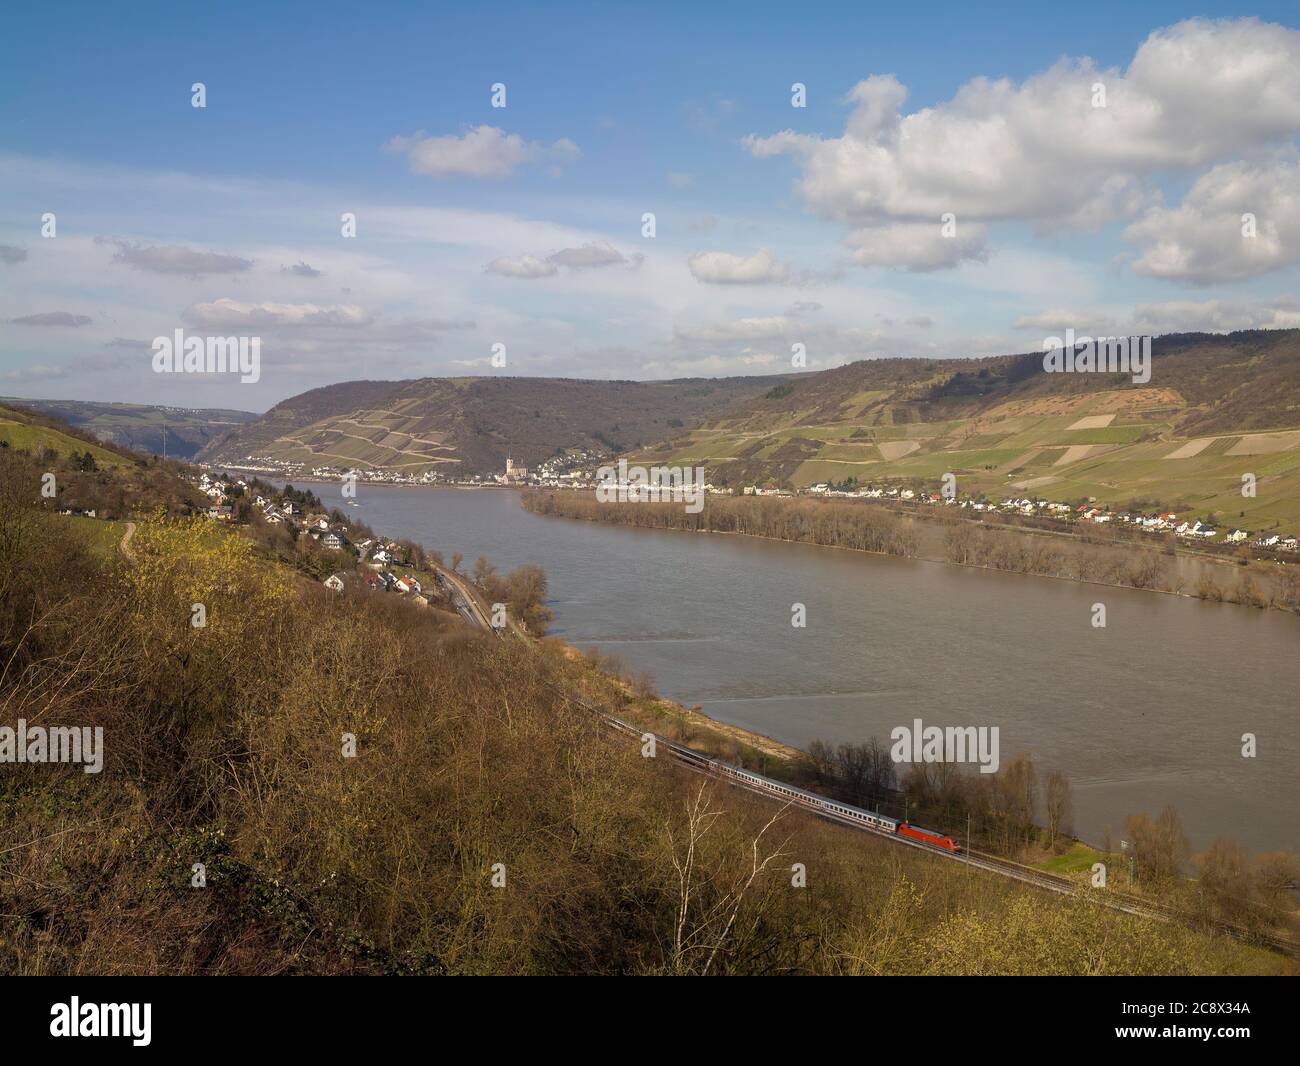 Vue sur la vallée du Rhin avec la ville de Lorch dans la distance Banque D'Images